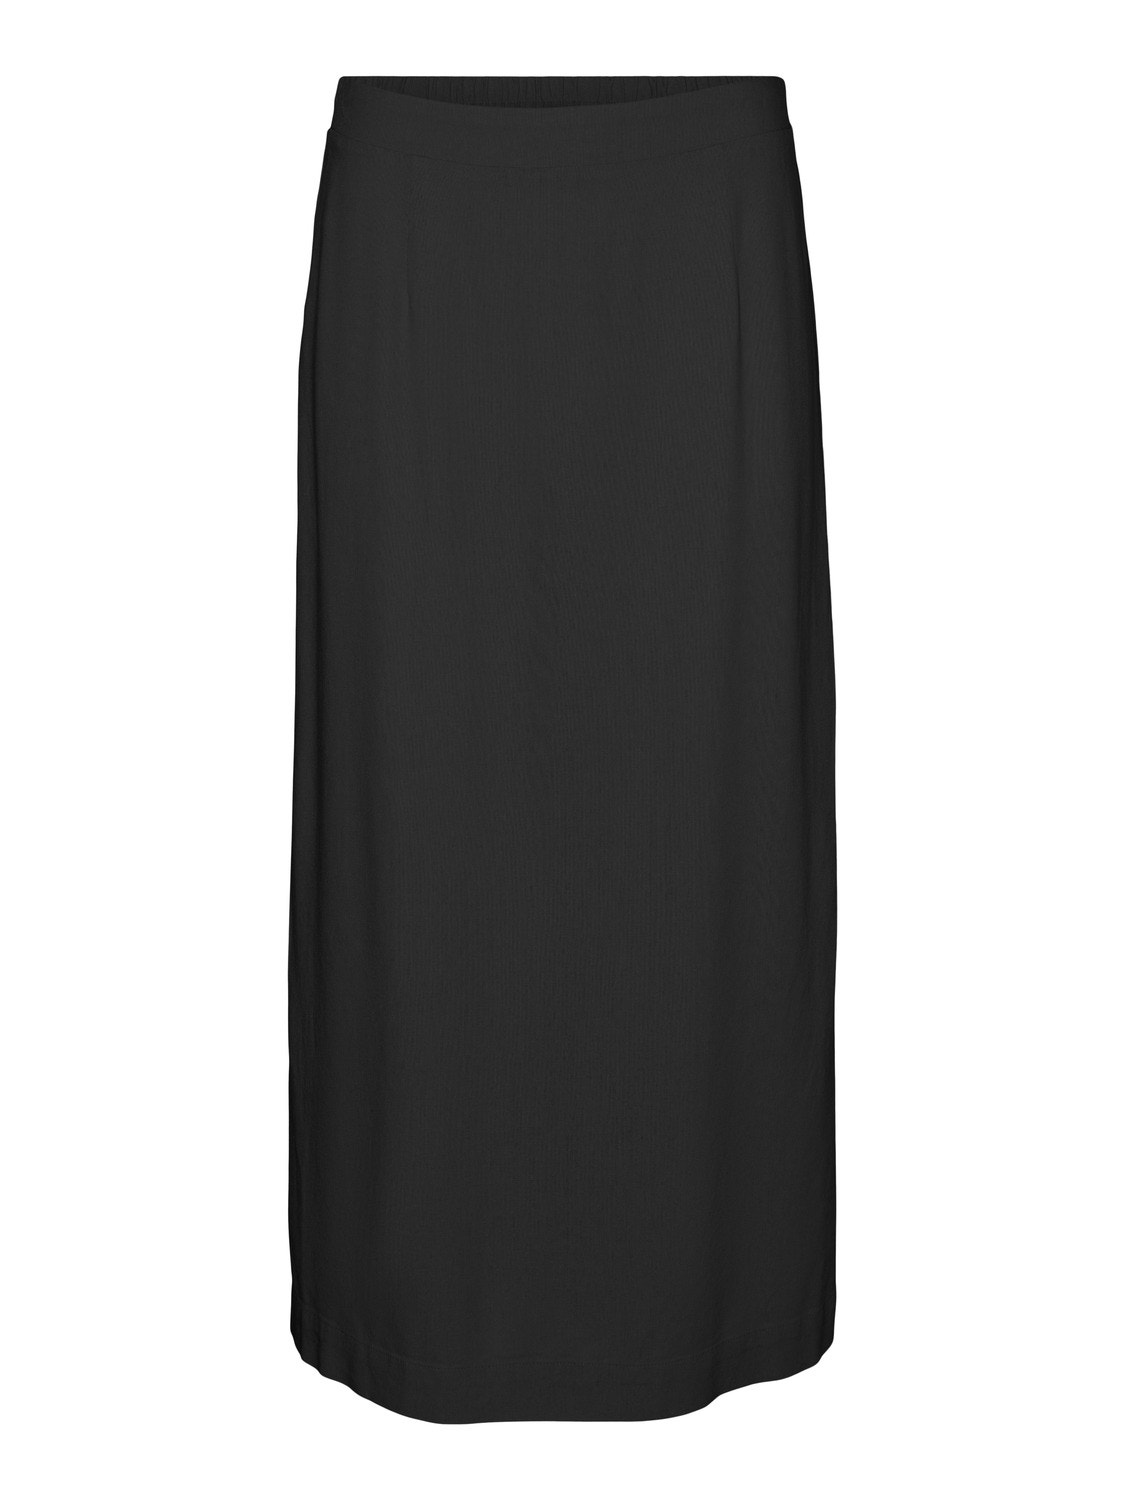 Vero Moda VMMYMILO Long Skirt -Black - 10303726